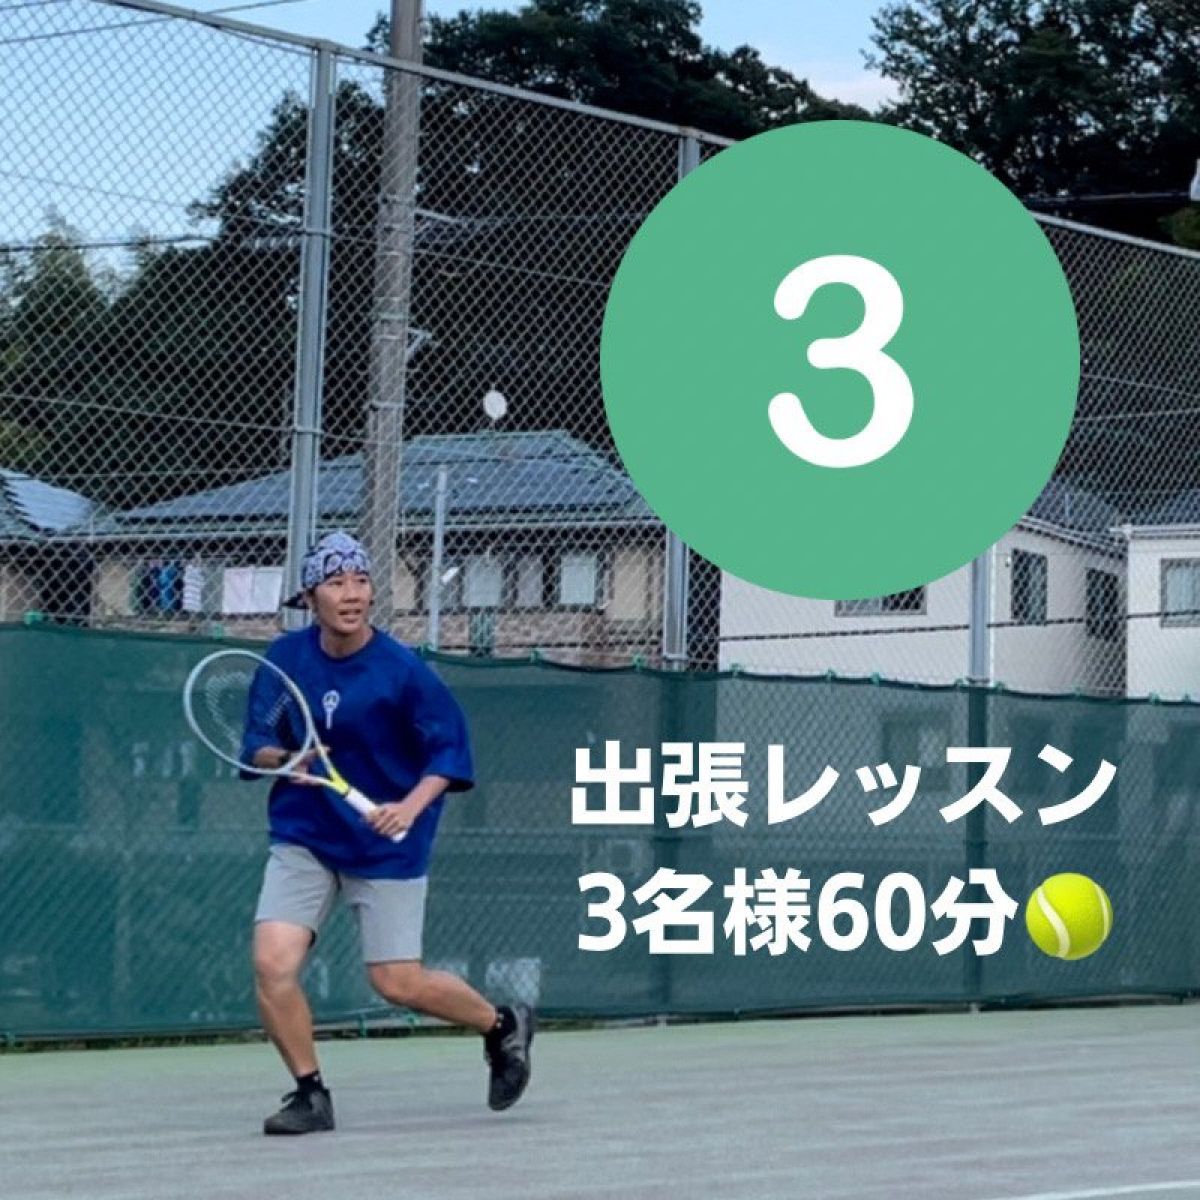 【3名様 60分】出張テニスレッスンチケット(交通費込み)